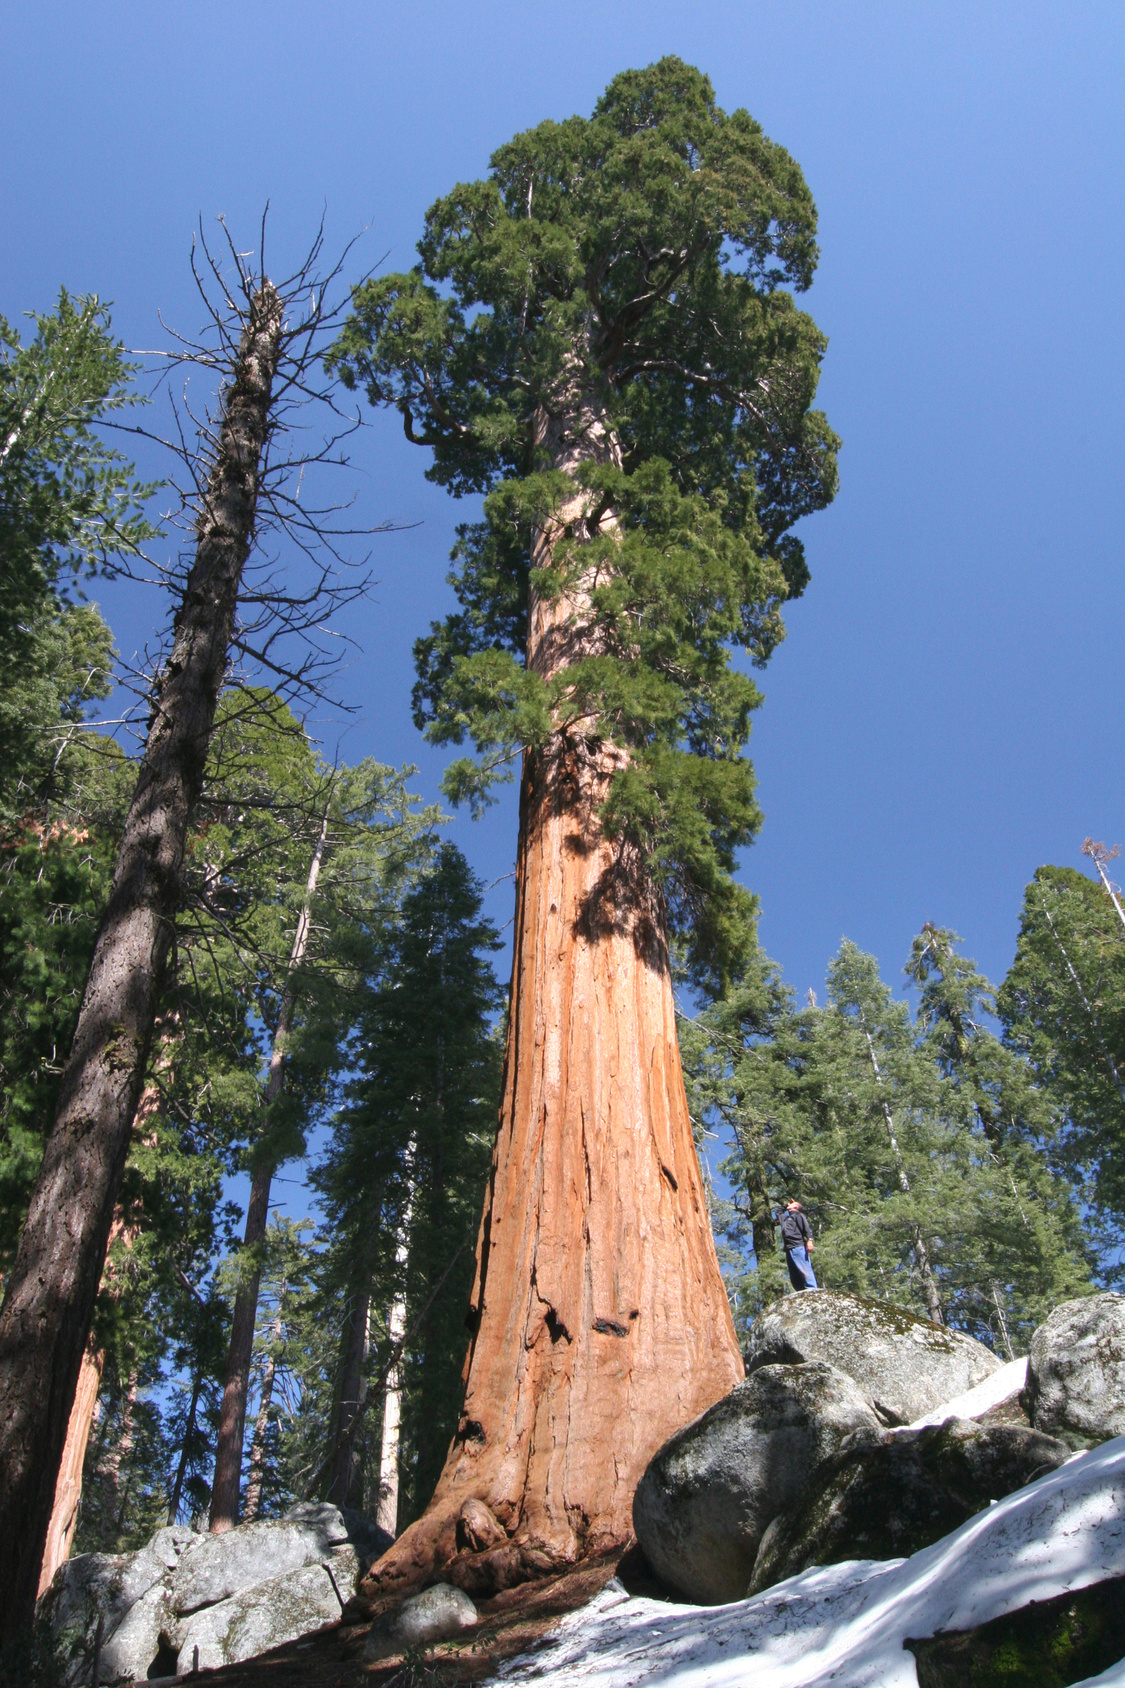 Seedeo® Küsten-Mammutbaum (Sequoia sempervirens) 30 Korn